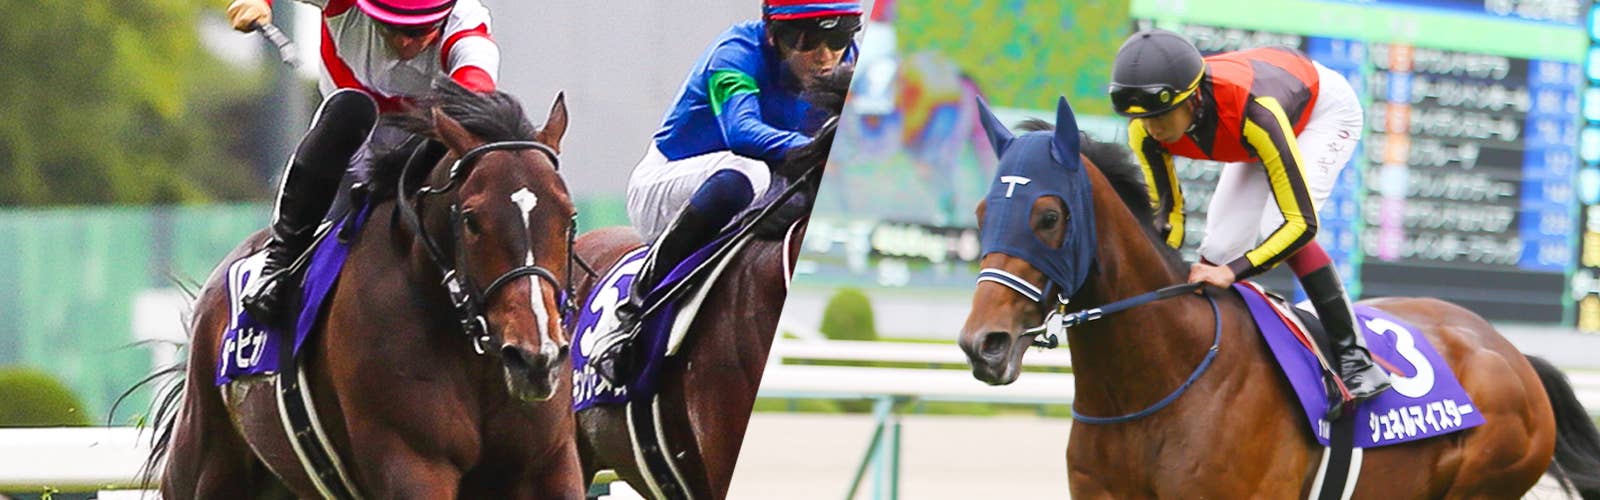 2019年開催 香港国際競馬 日本馬記念馬券-